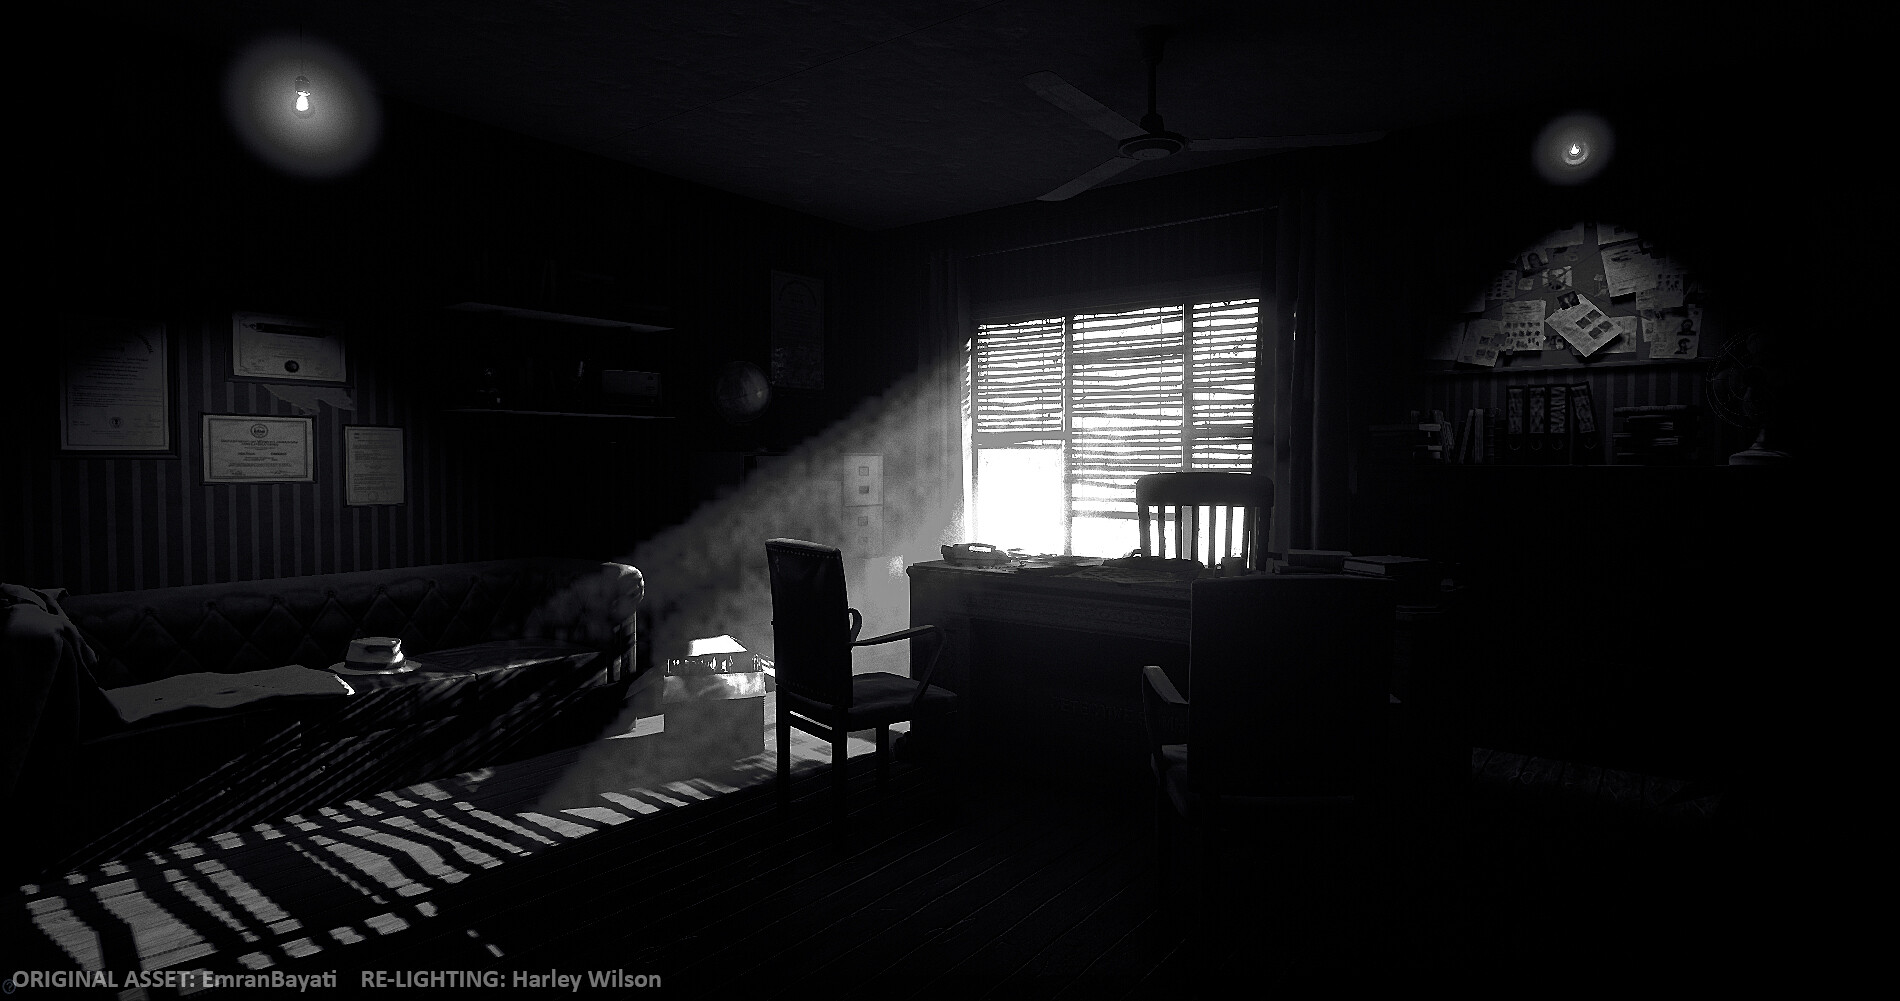 Harley Wilson Ue4 Relighting Noir Detective Office